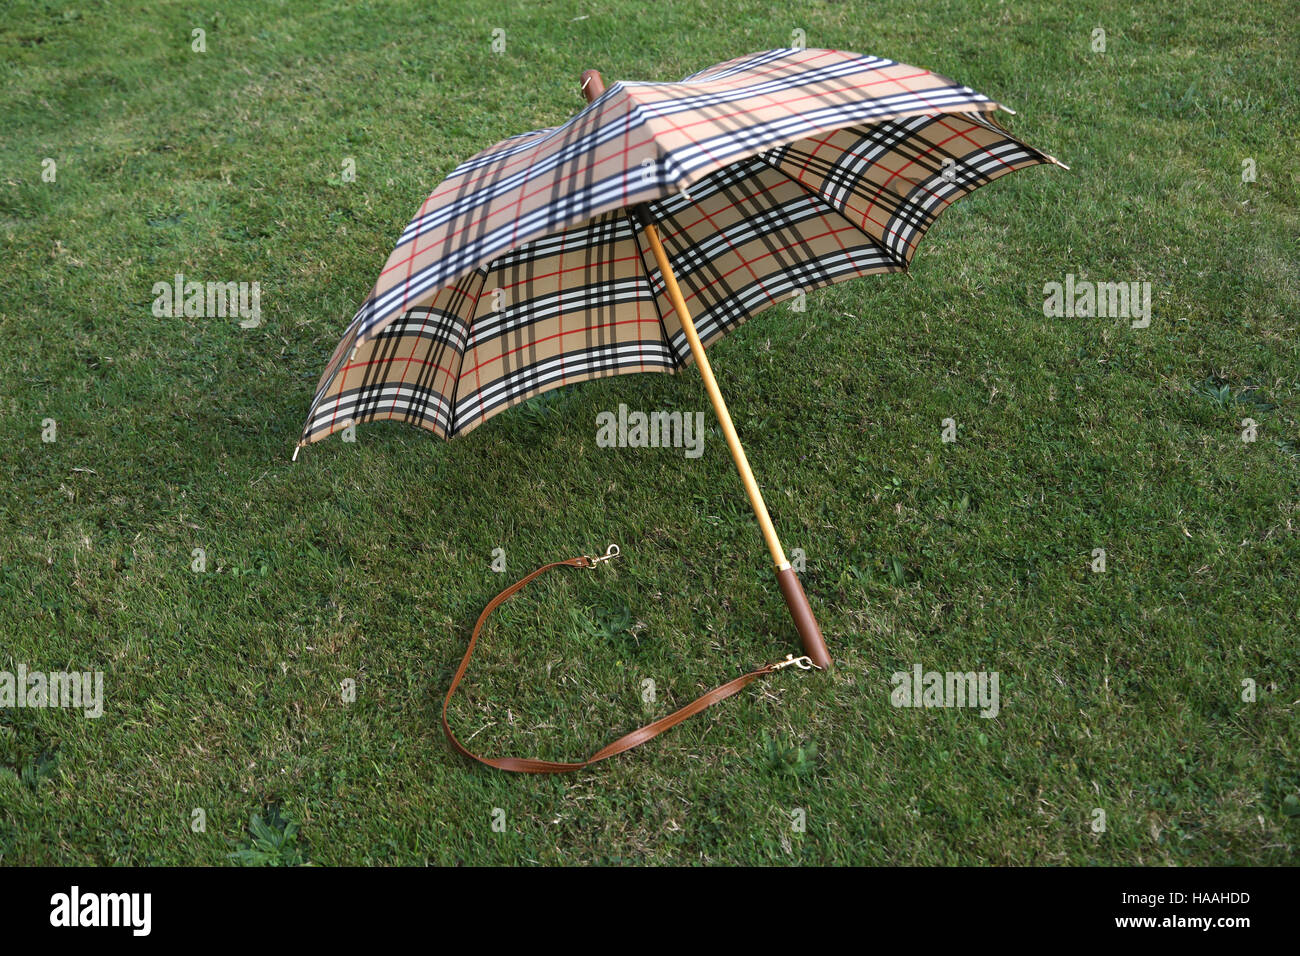 Burberry Damen Regenschirm mit Schultergurt Stockfotografie - Alamy